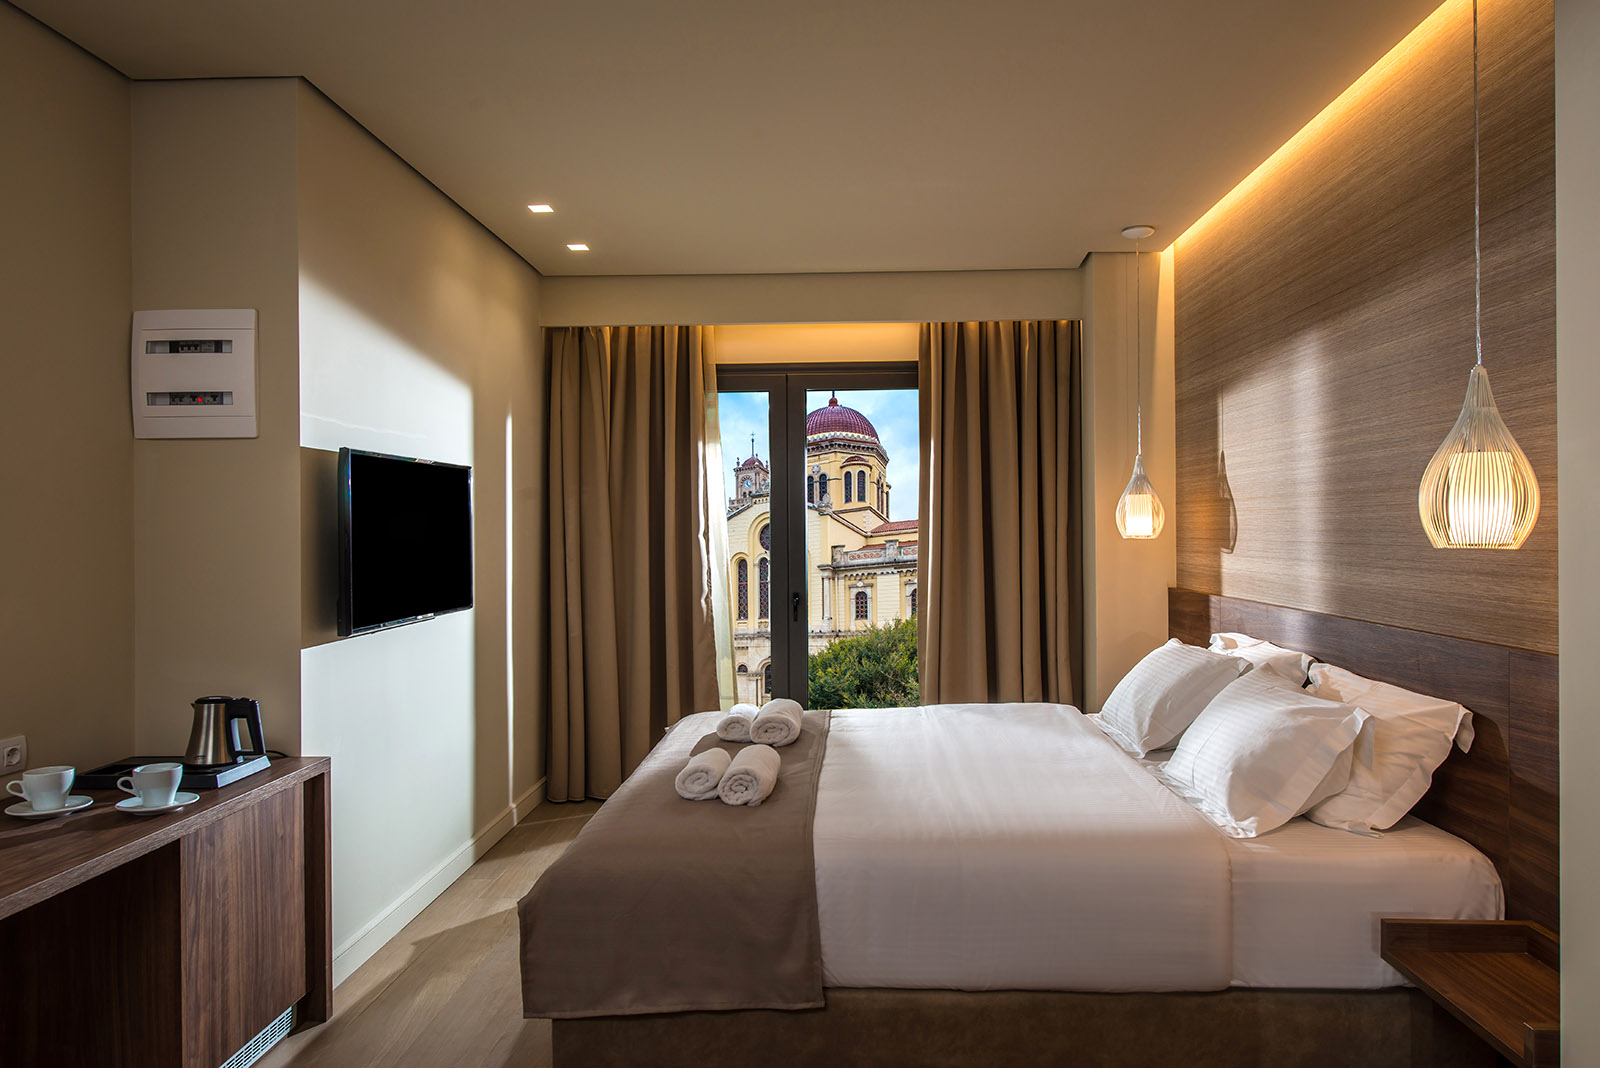 Luxury Hotels in Heraklion Crete - Metropole Urban Hotel